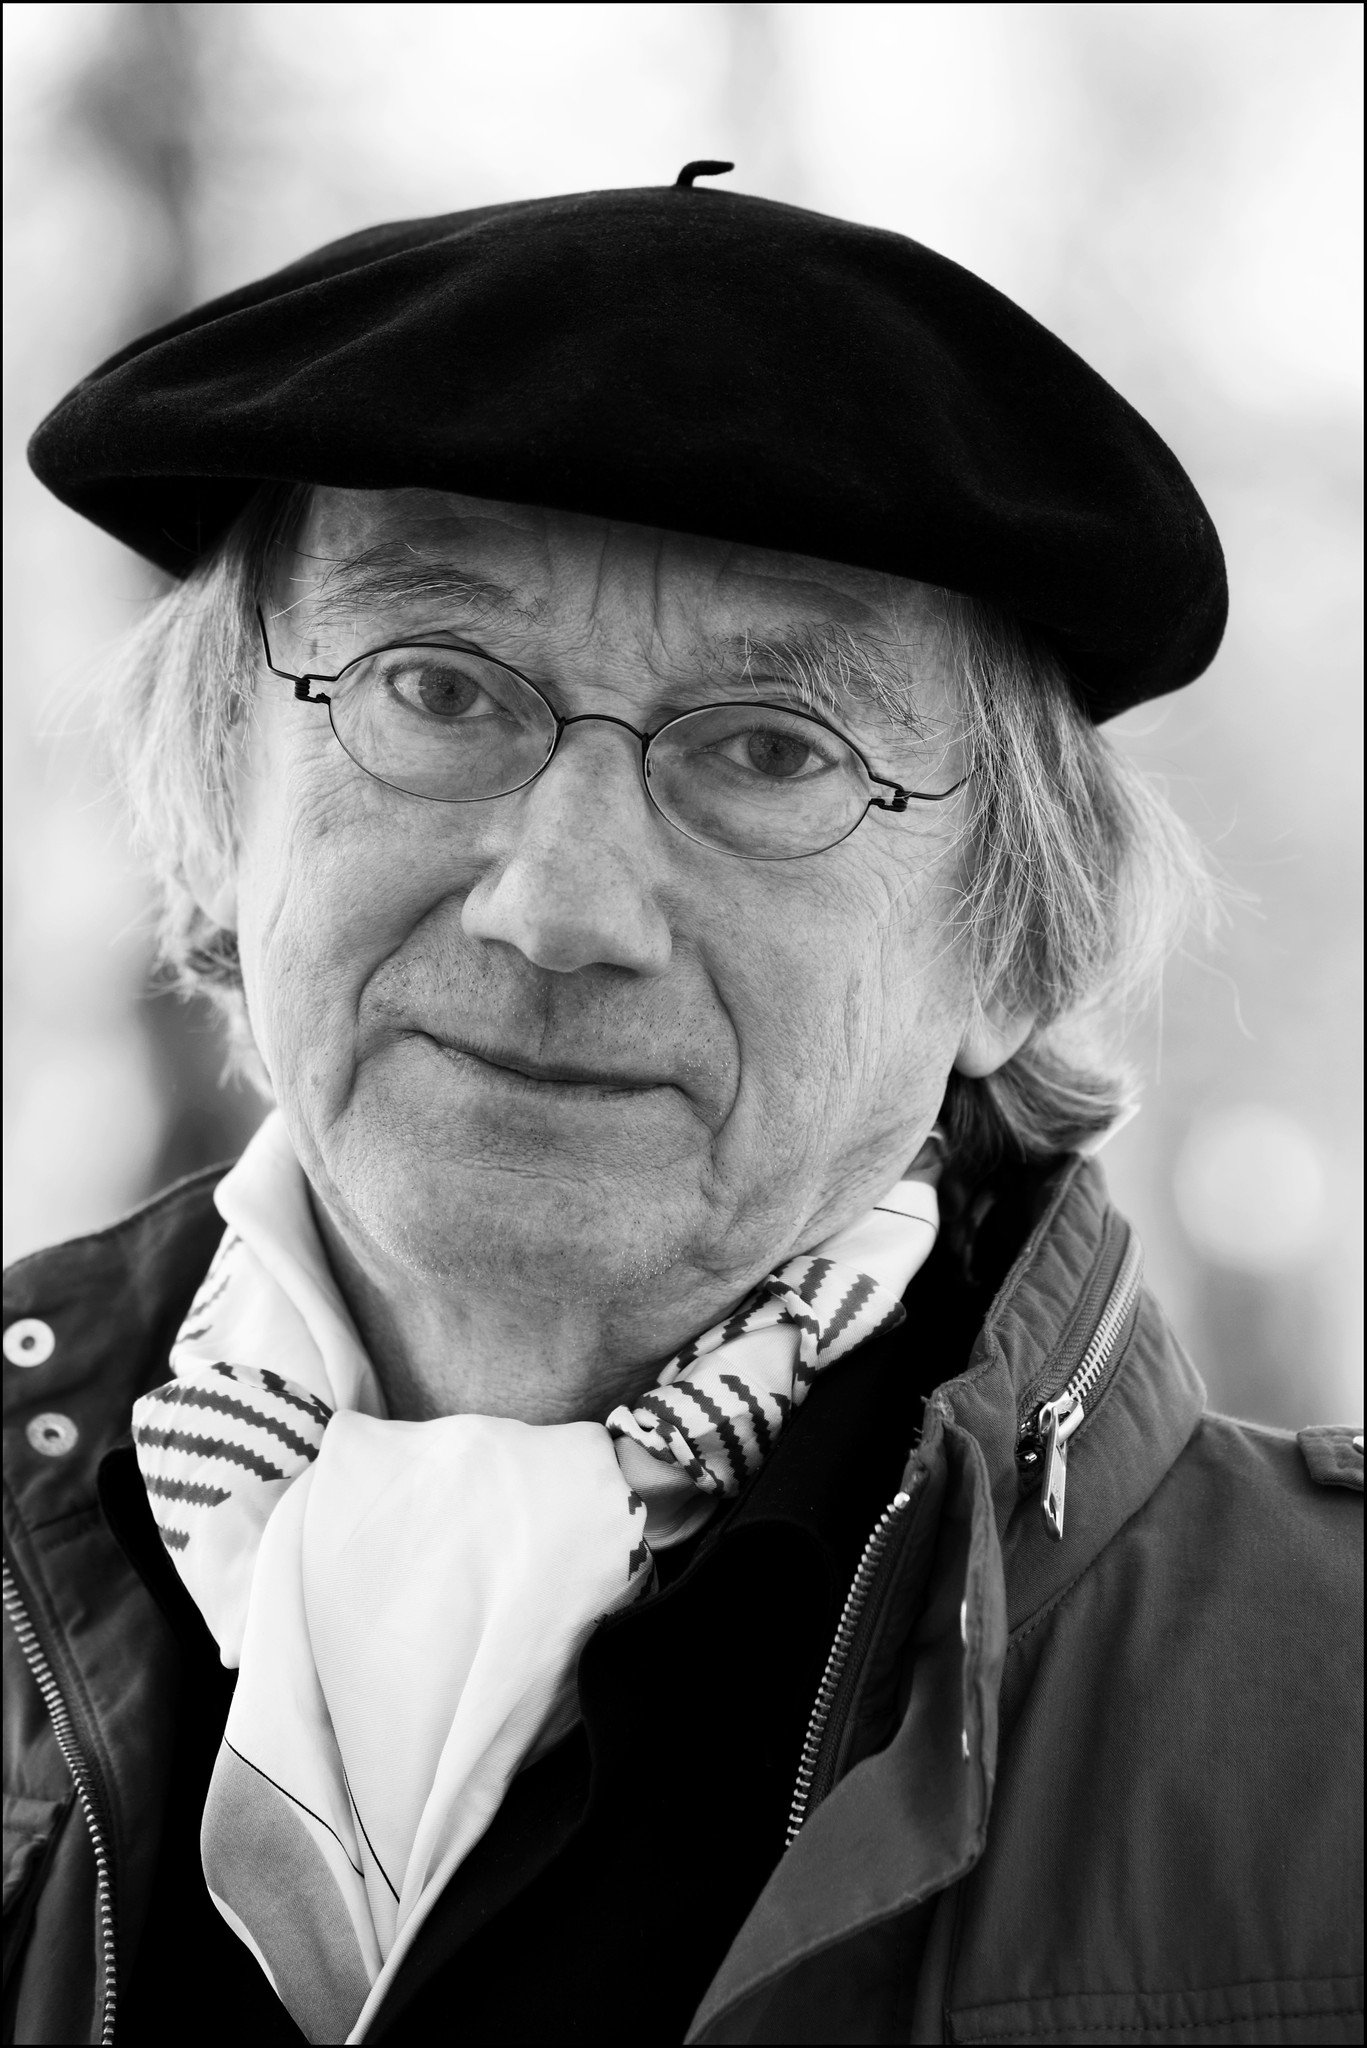 Profilbilde Einar Økland av fotograf Tove K. Breistein